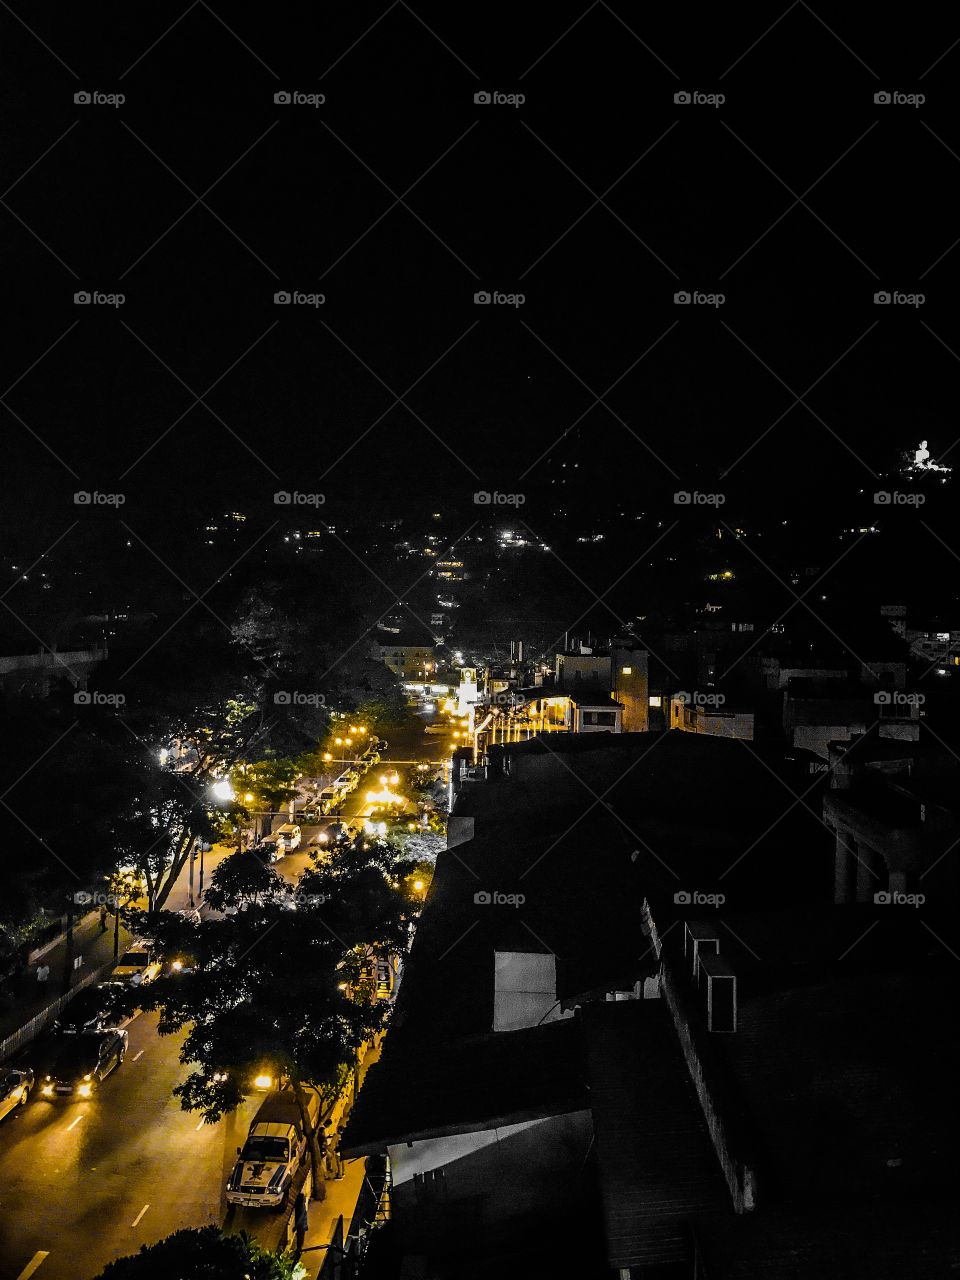 Kandy at night